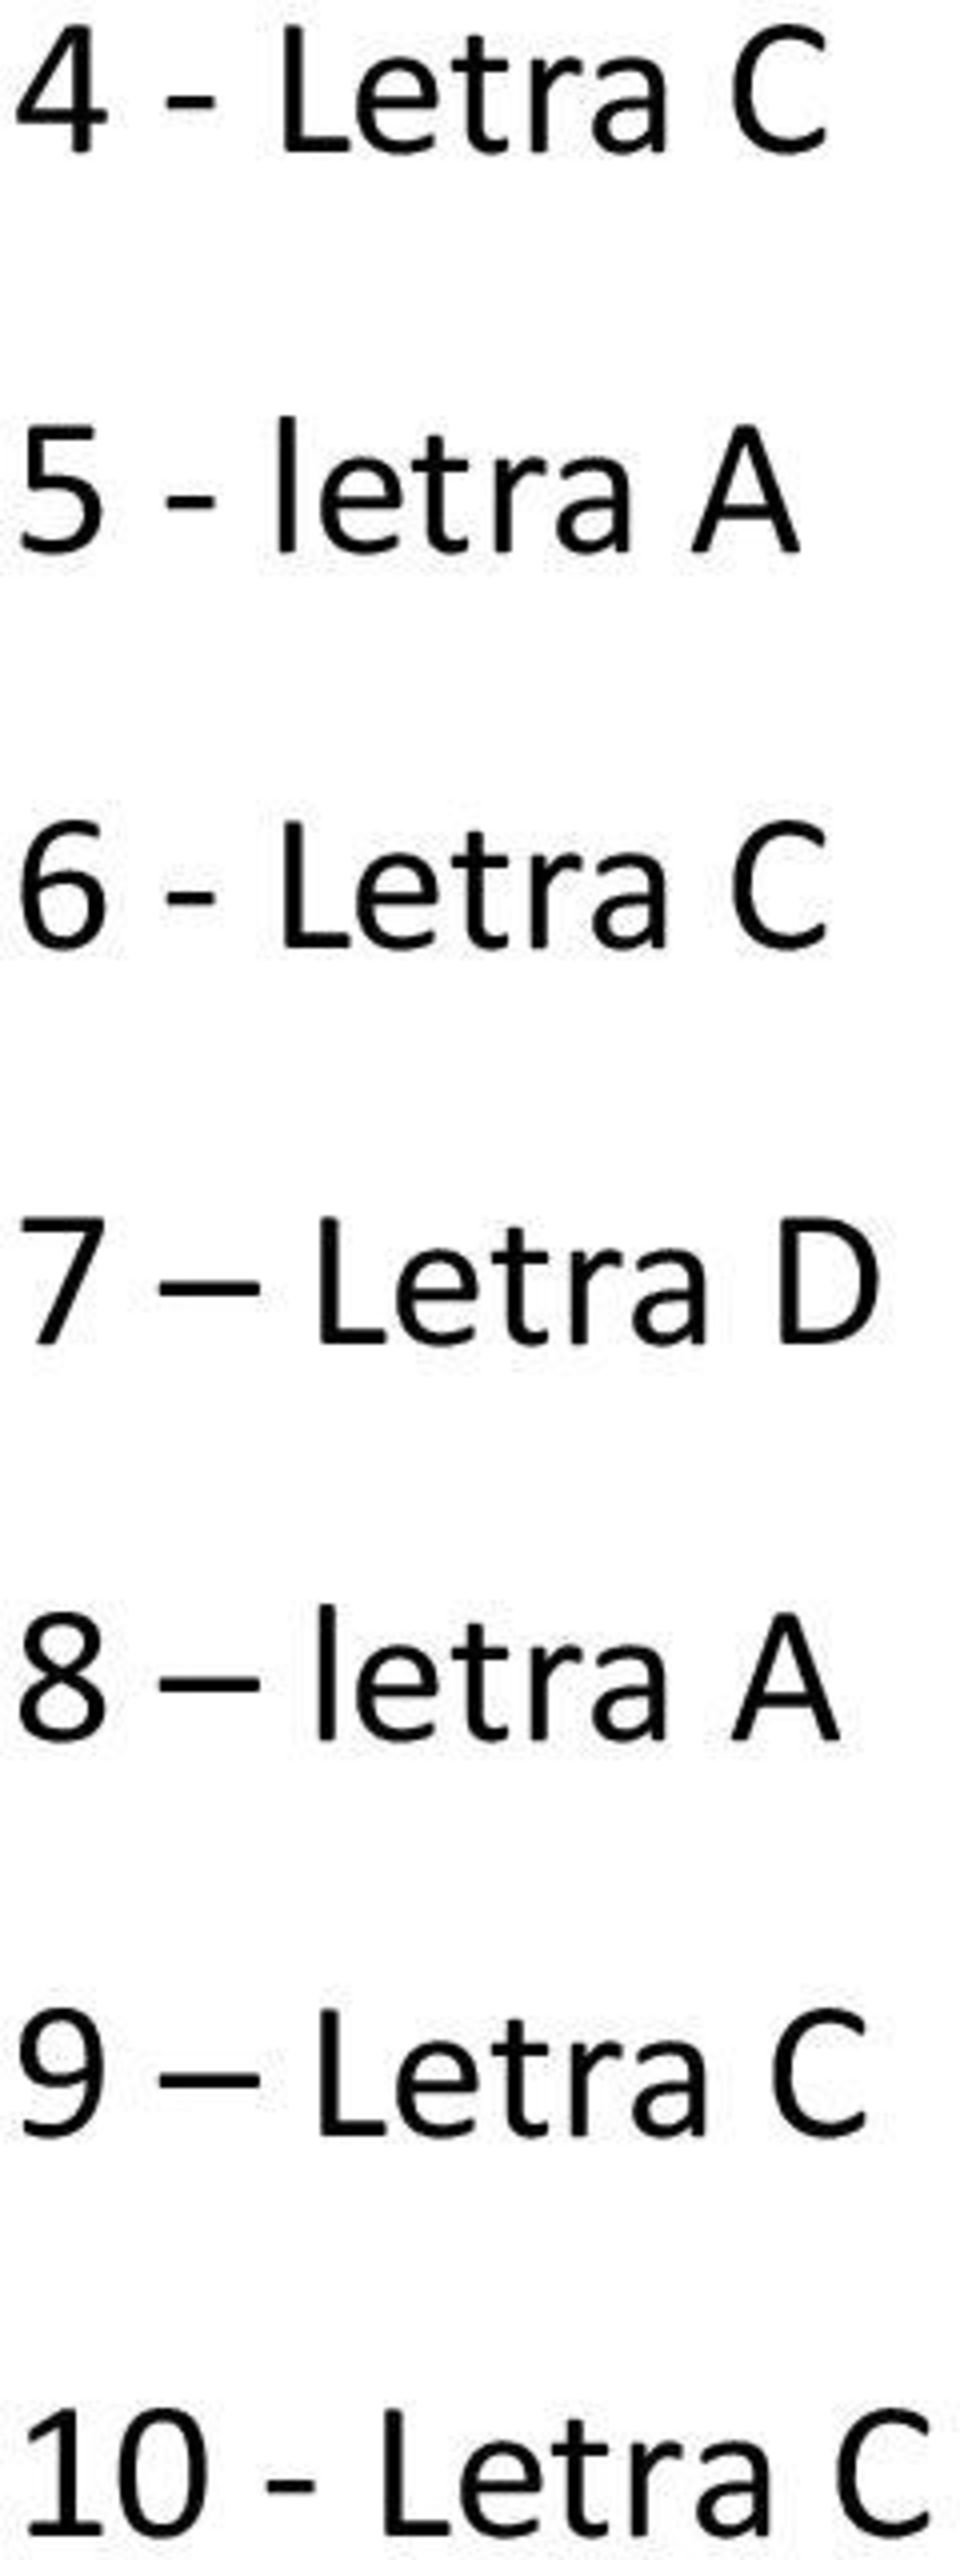 7 Letra D 8 letra A